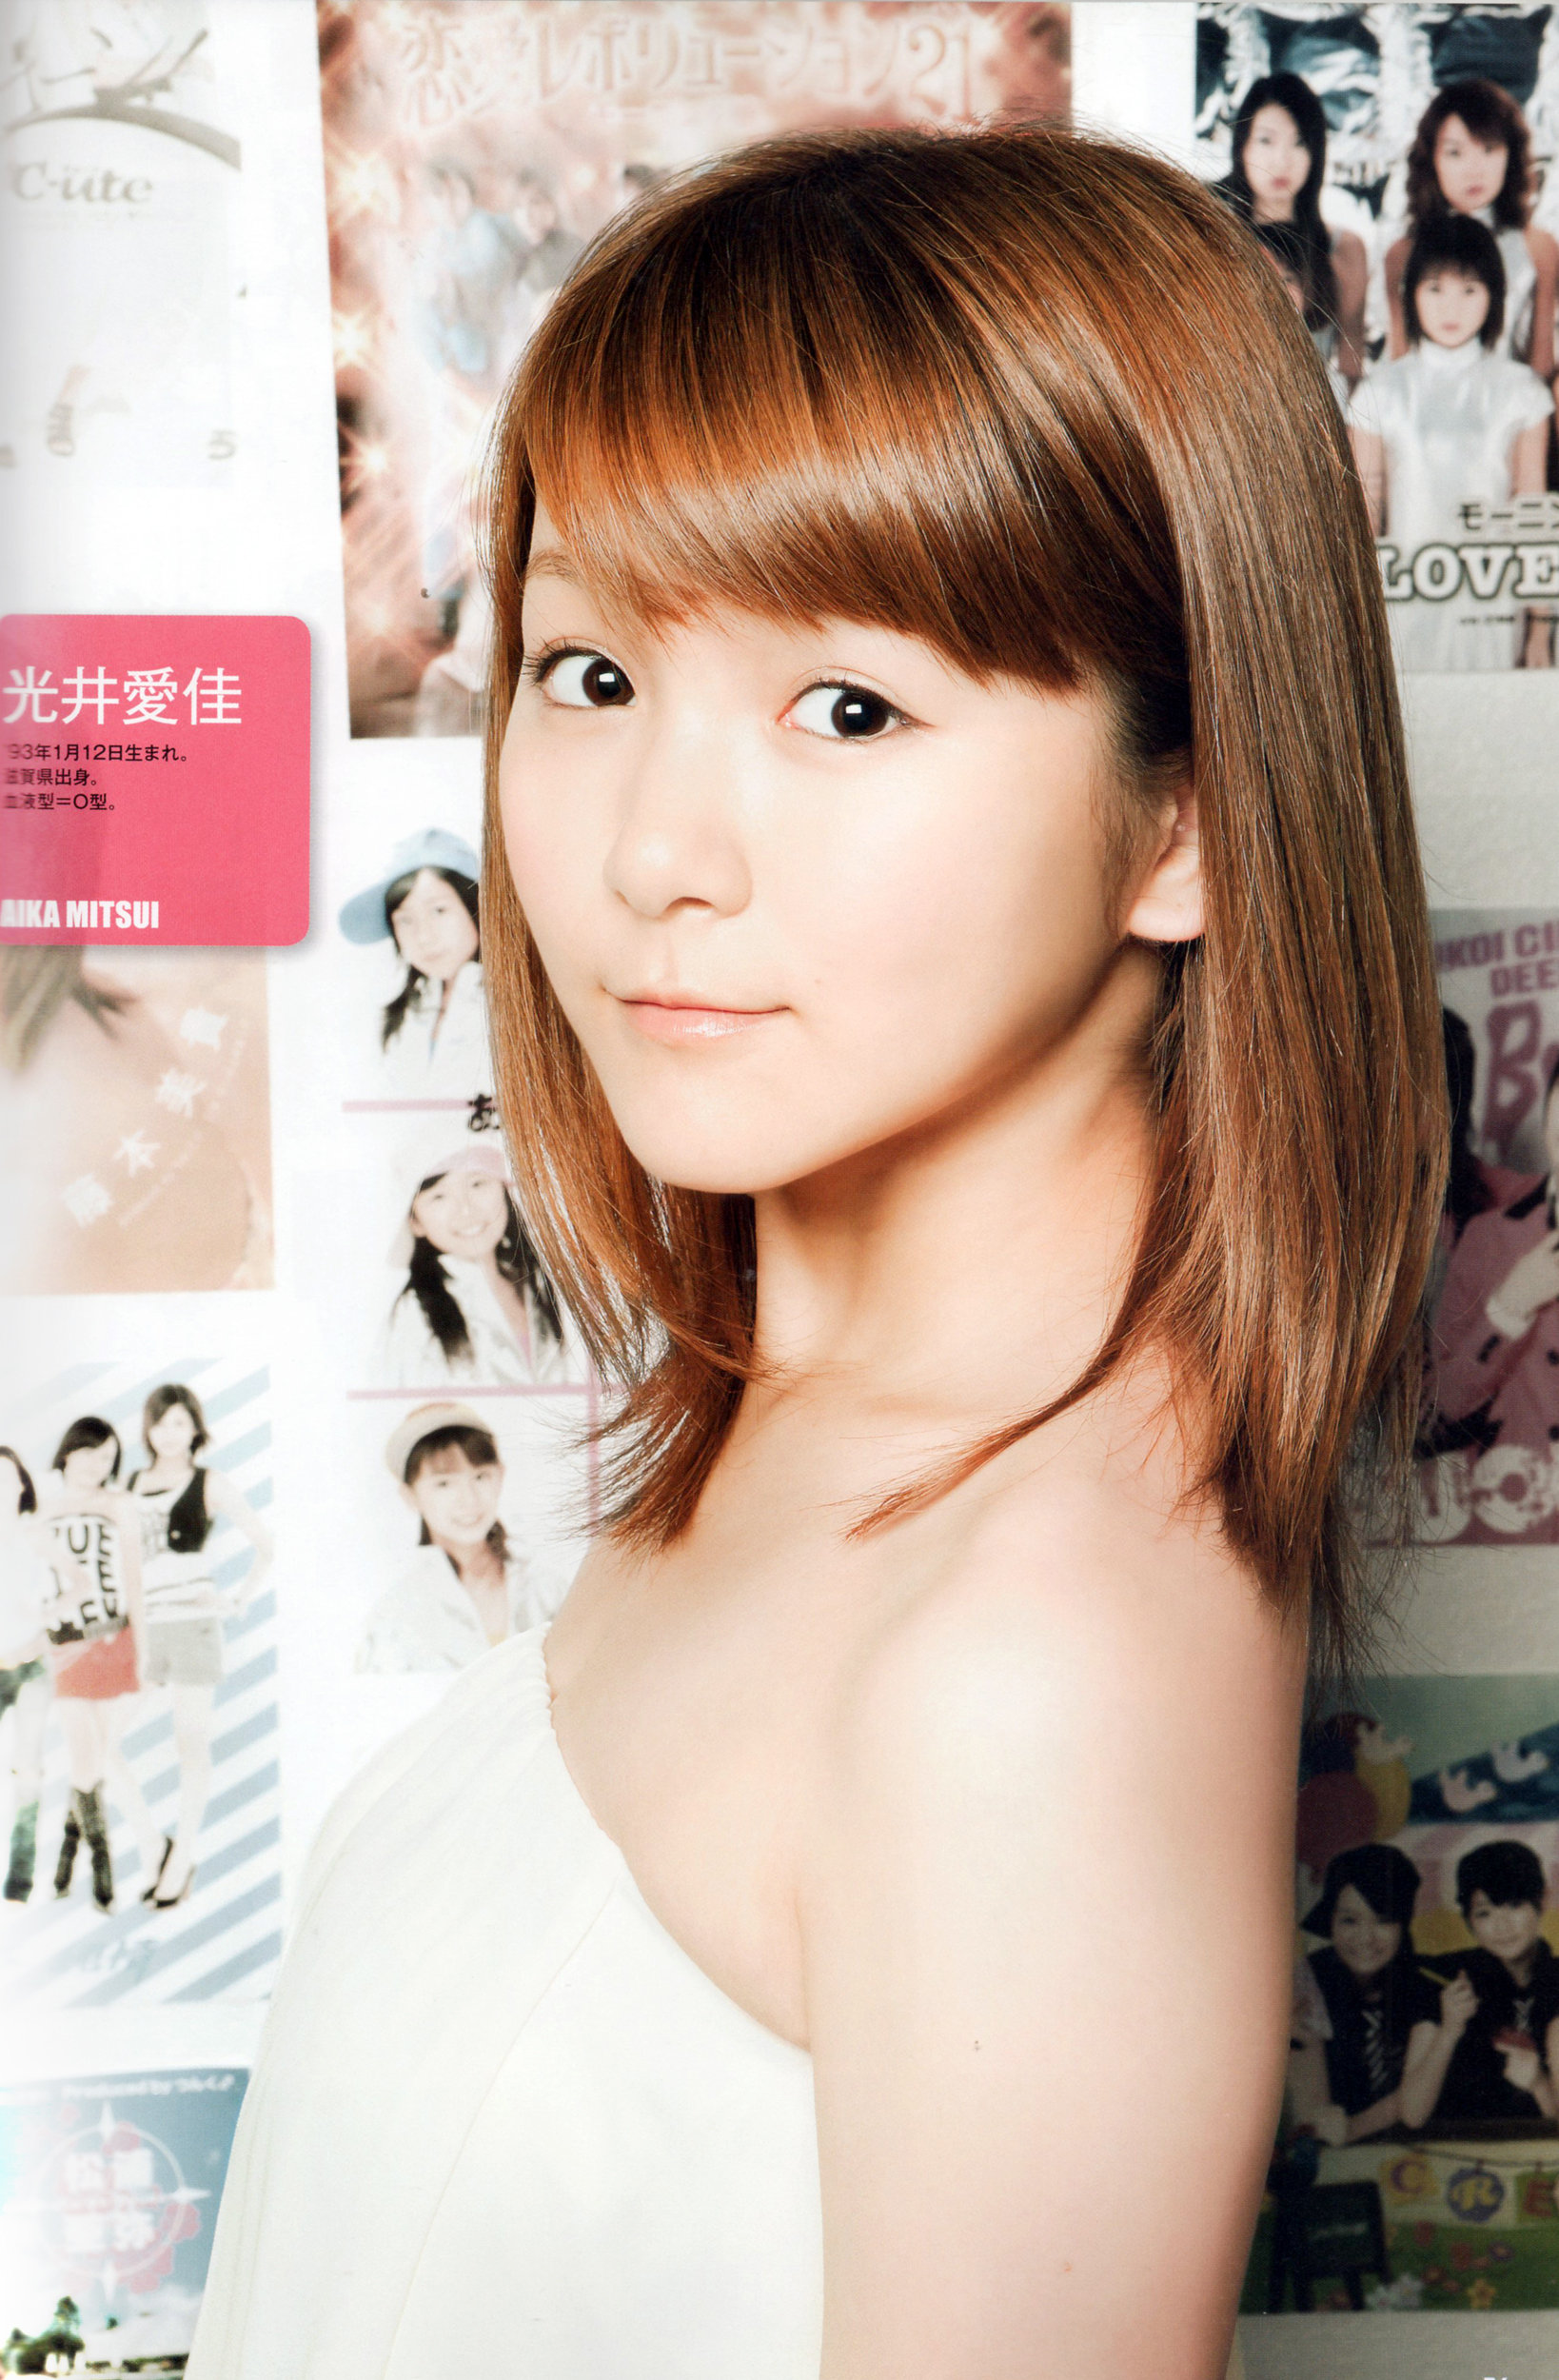 Aika Mitsui Morning Musume magazine scan